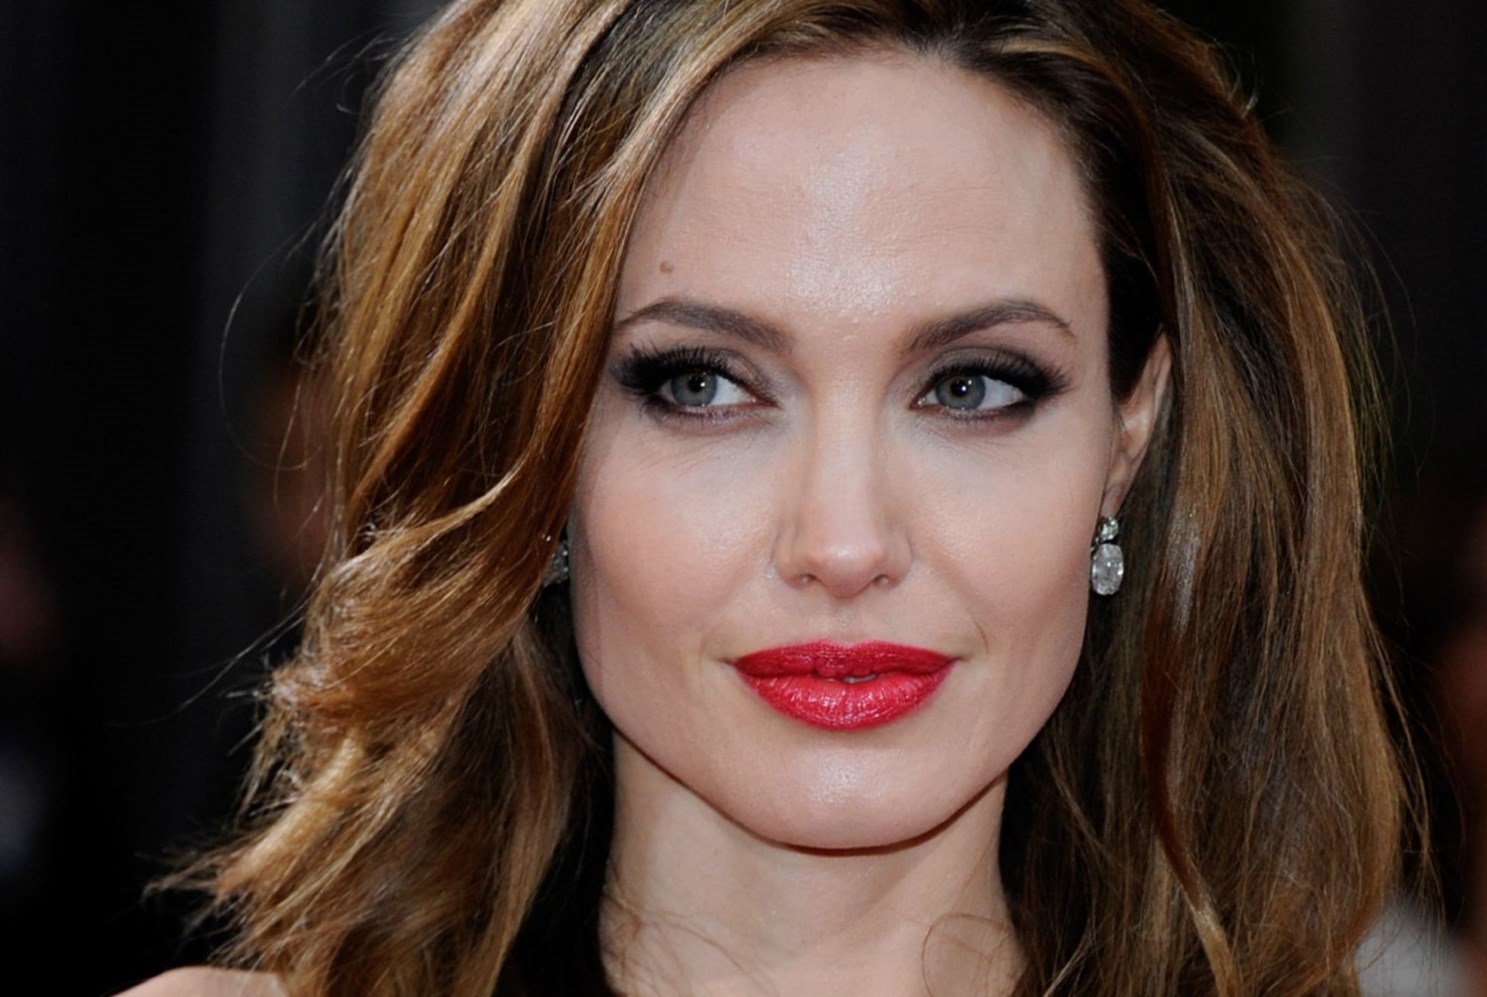 Angelina Jolie Family